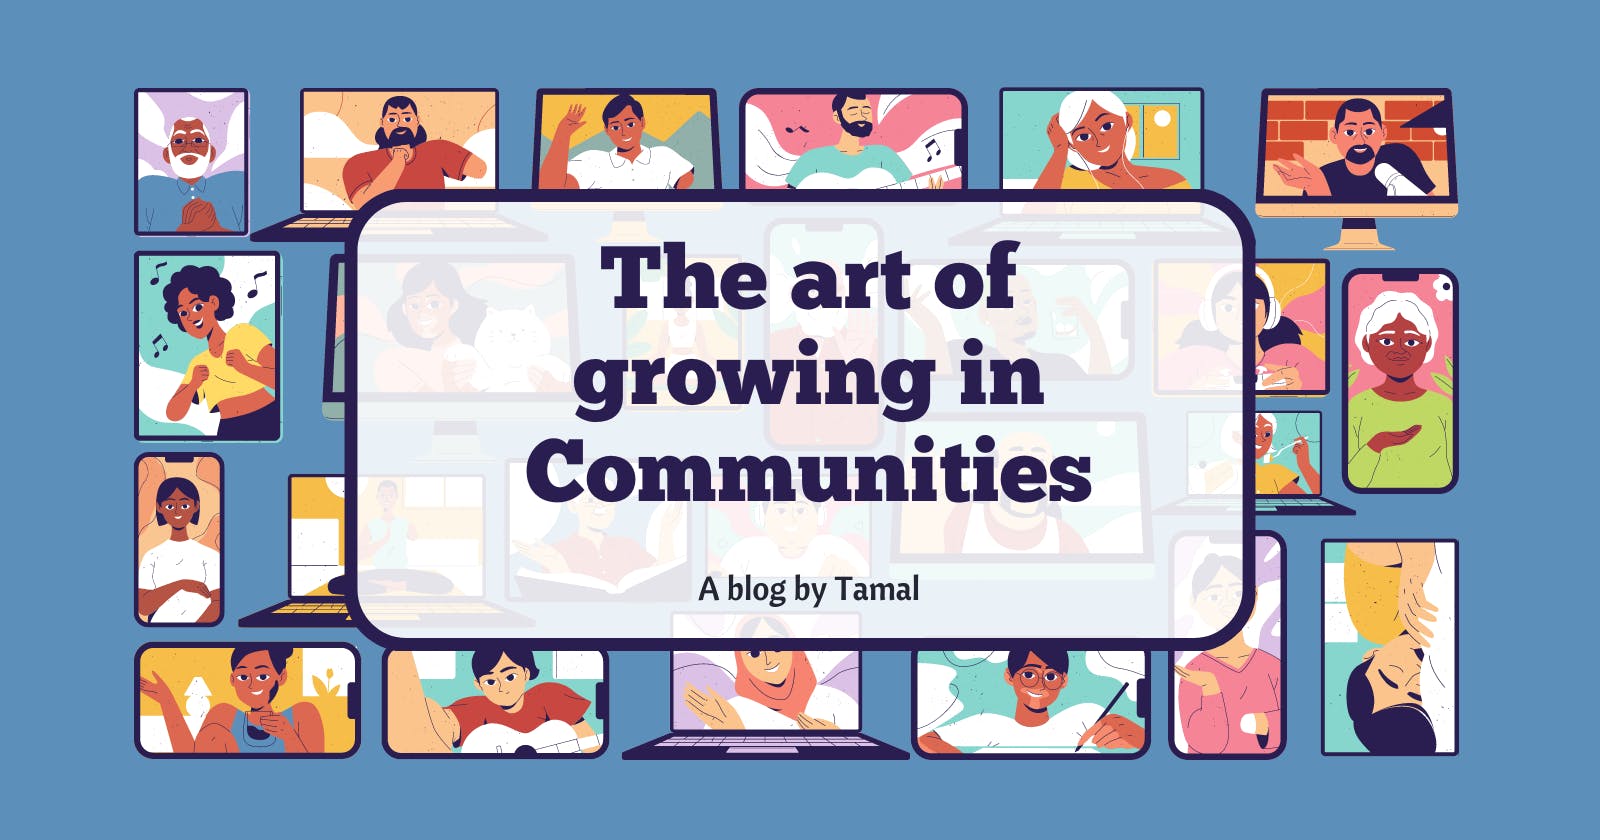 The art of growing : Communities